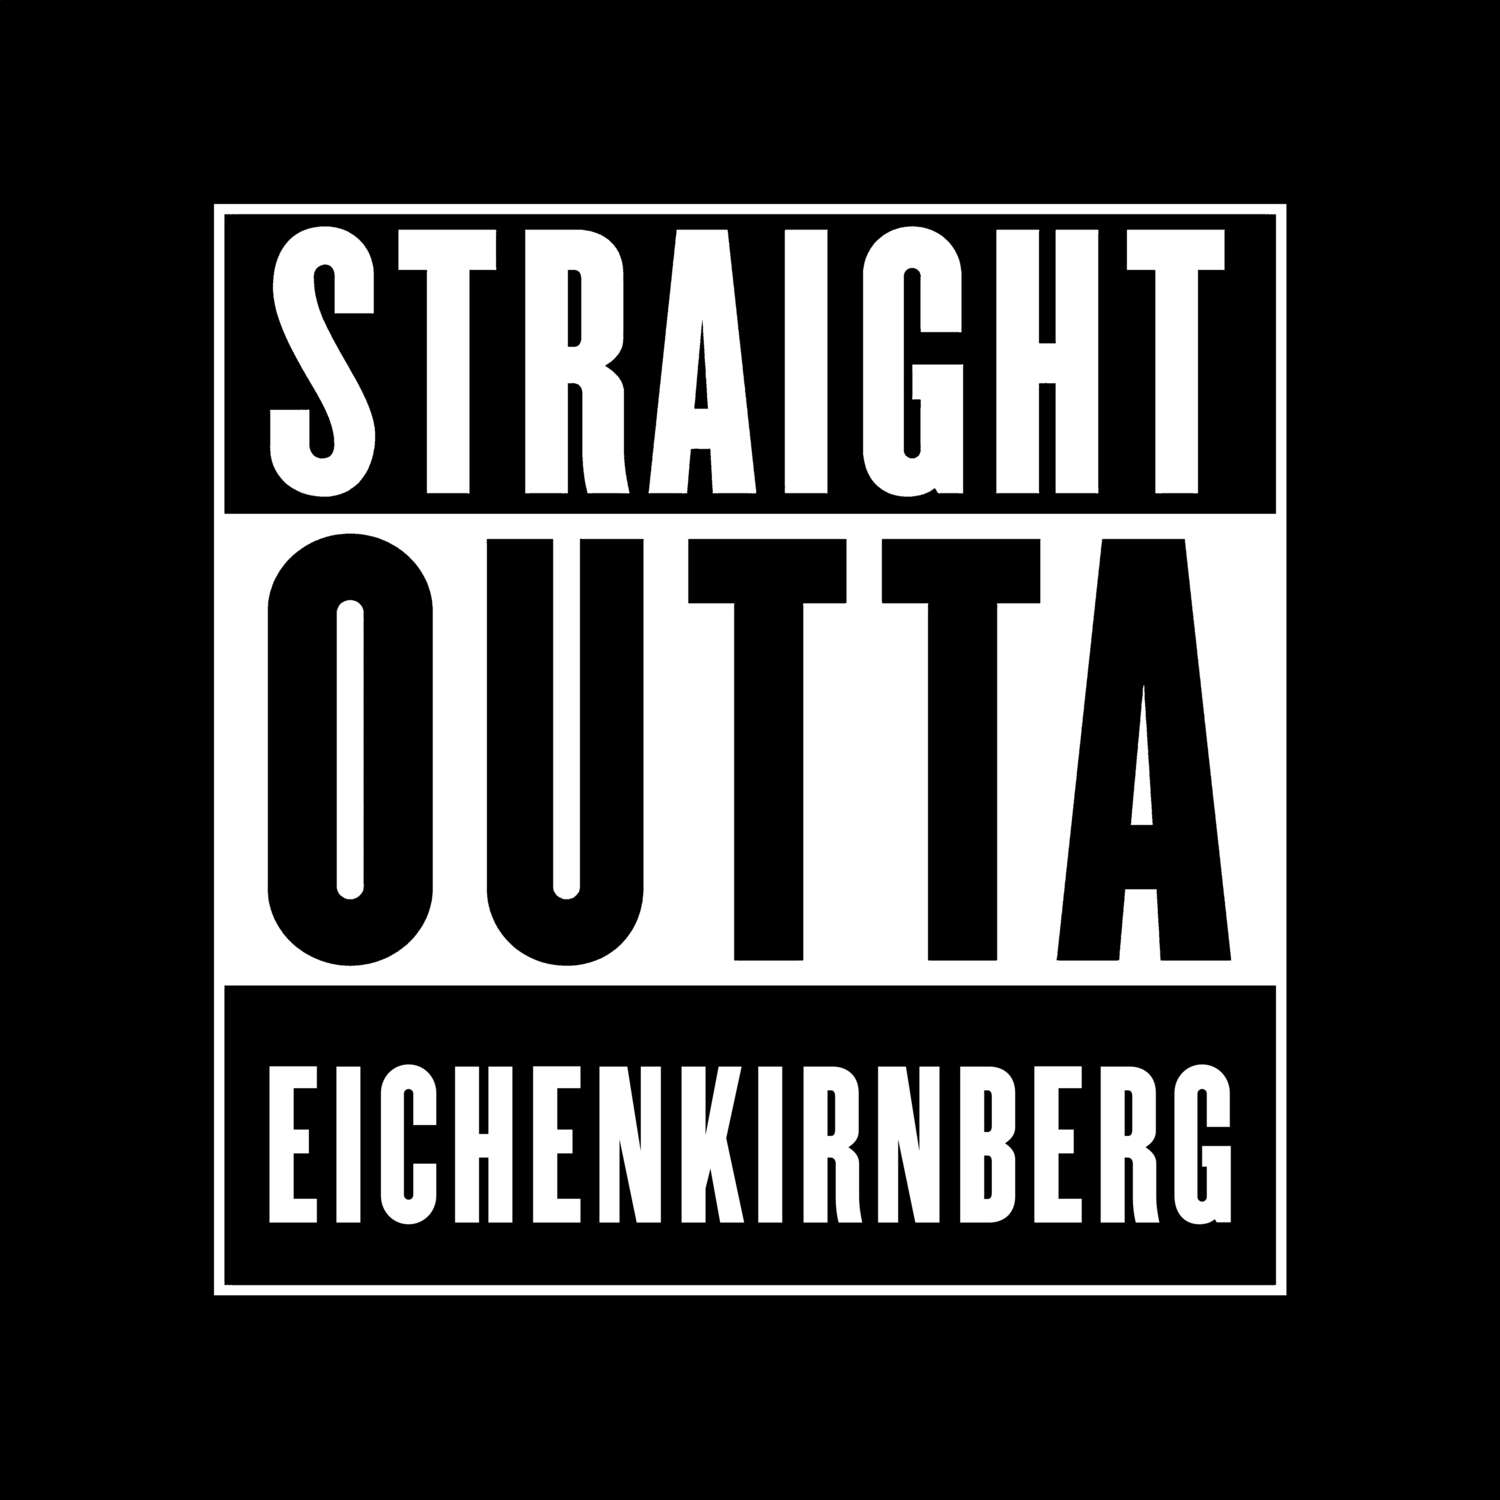 Eichenkirnberg T-Shirt »Straight Outta«